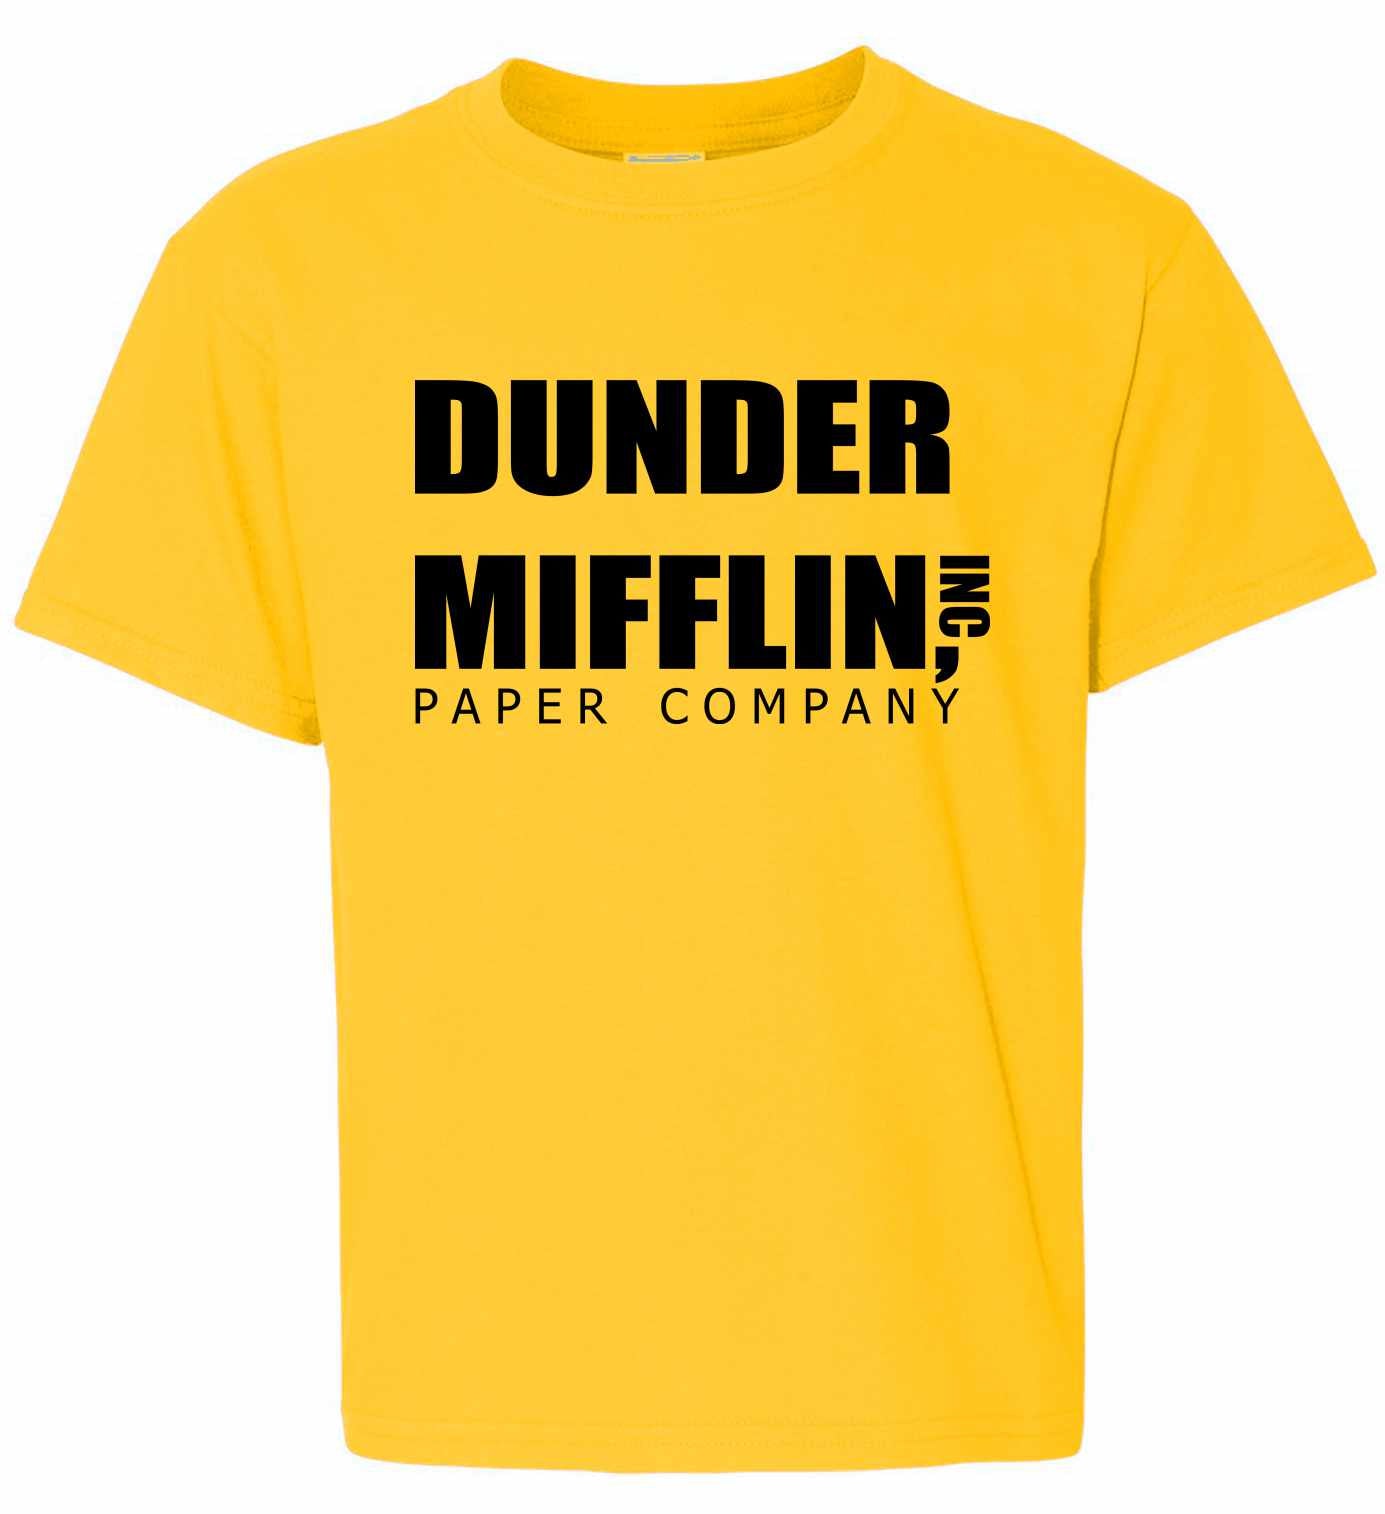 DUNDER MIFFLIN PAPER COMPANY on Kids T-Shirt (#469-201)